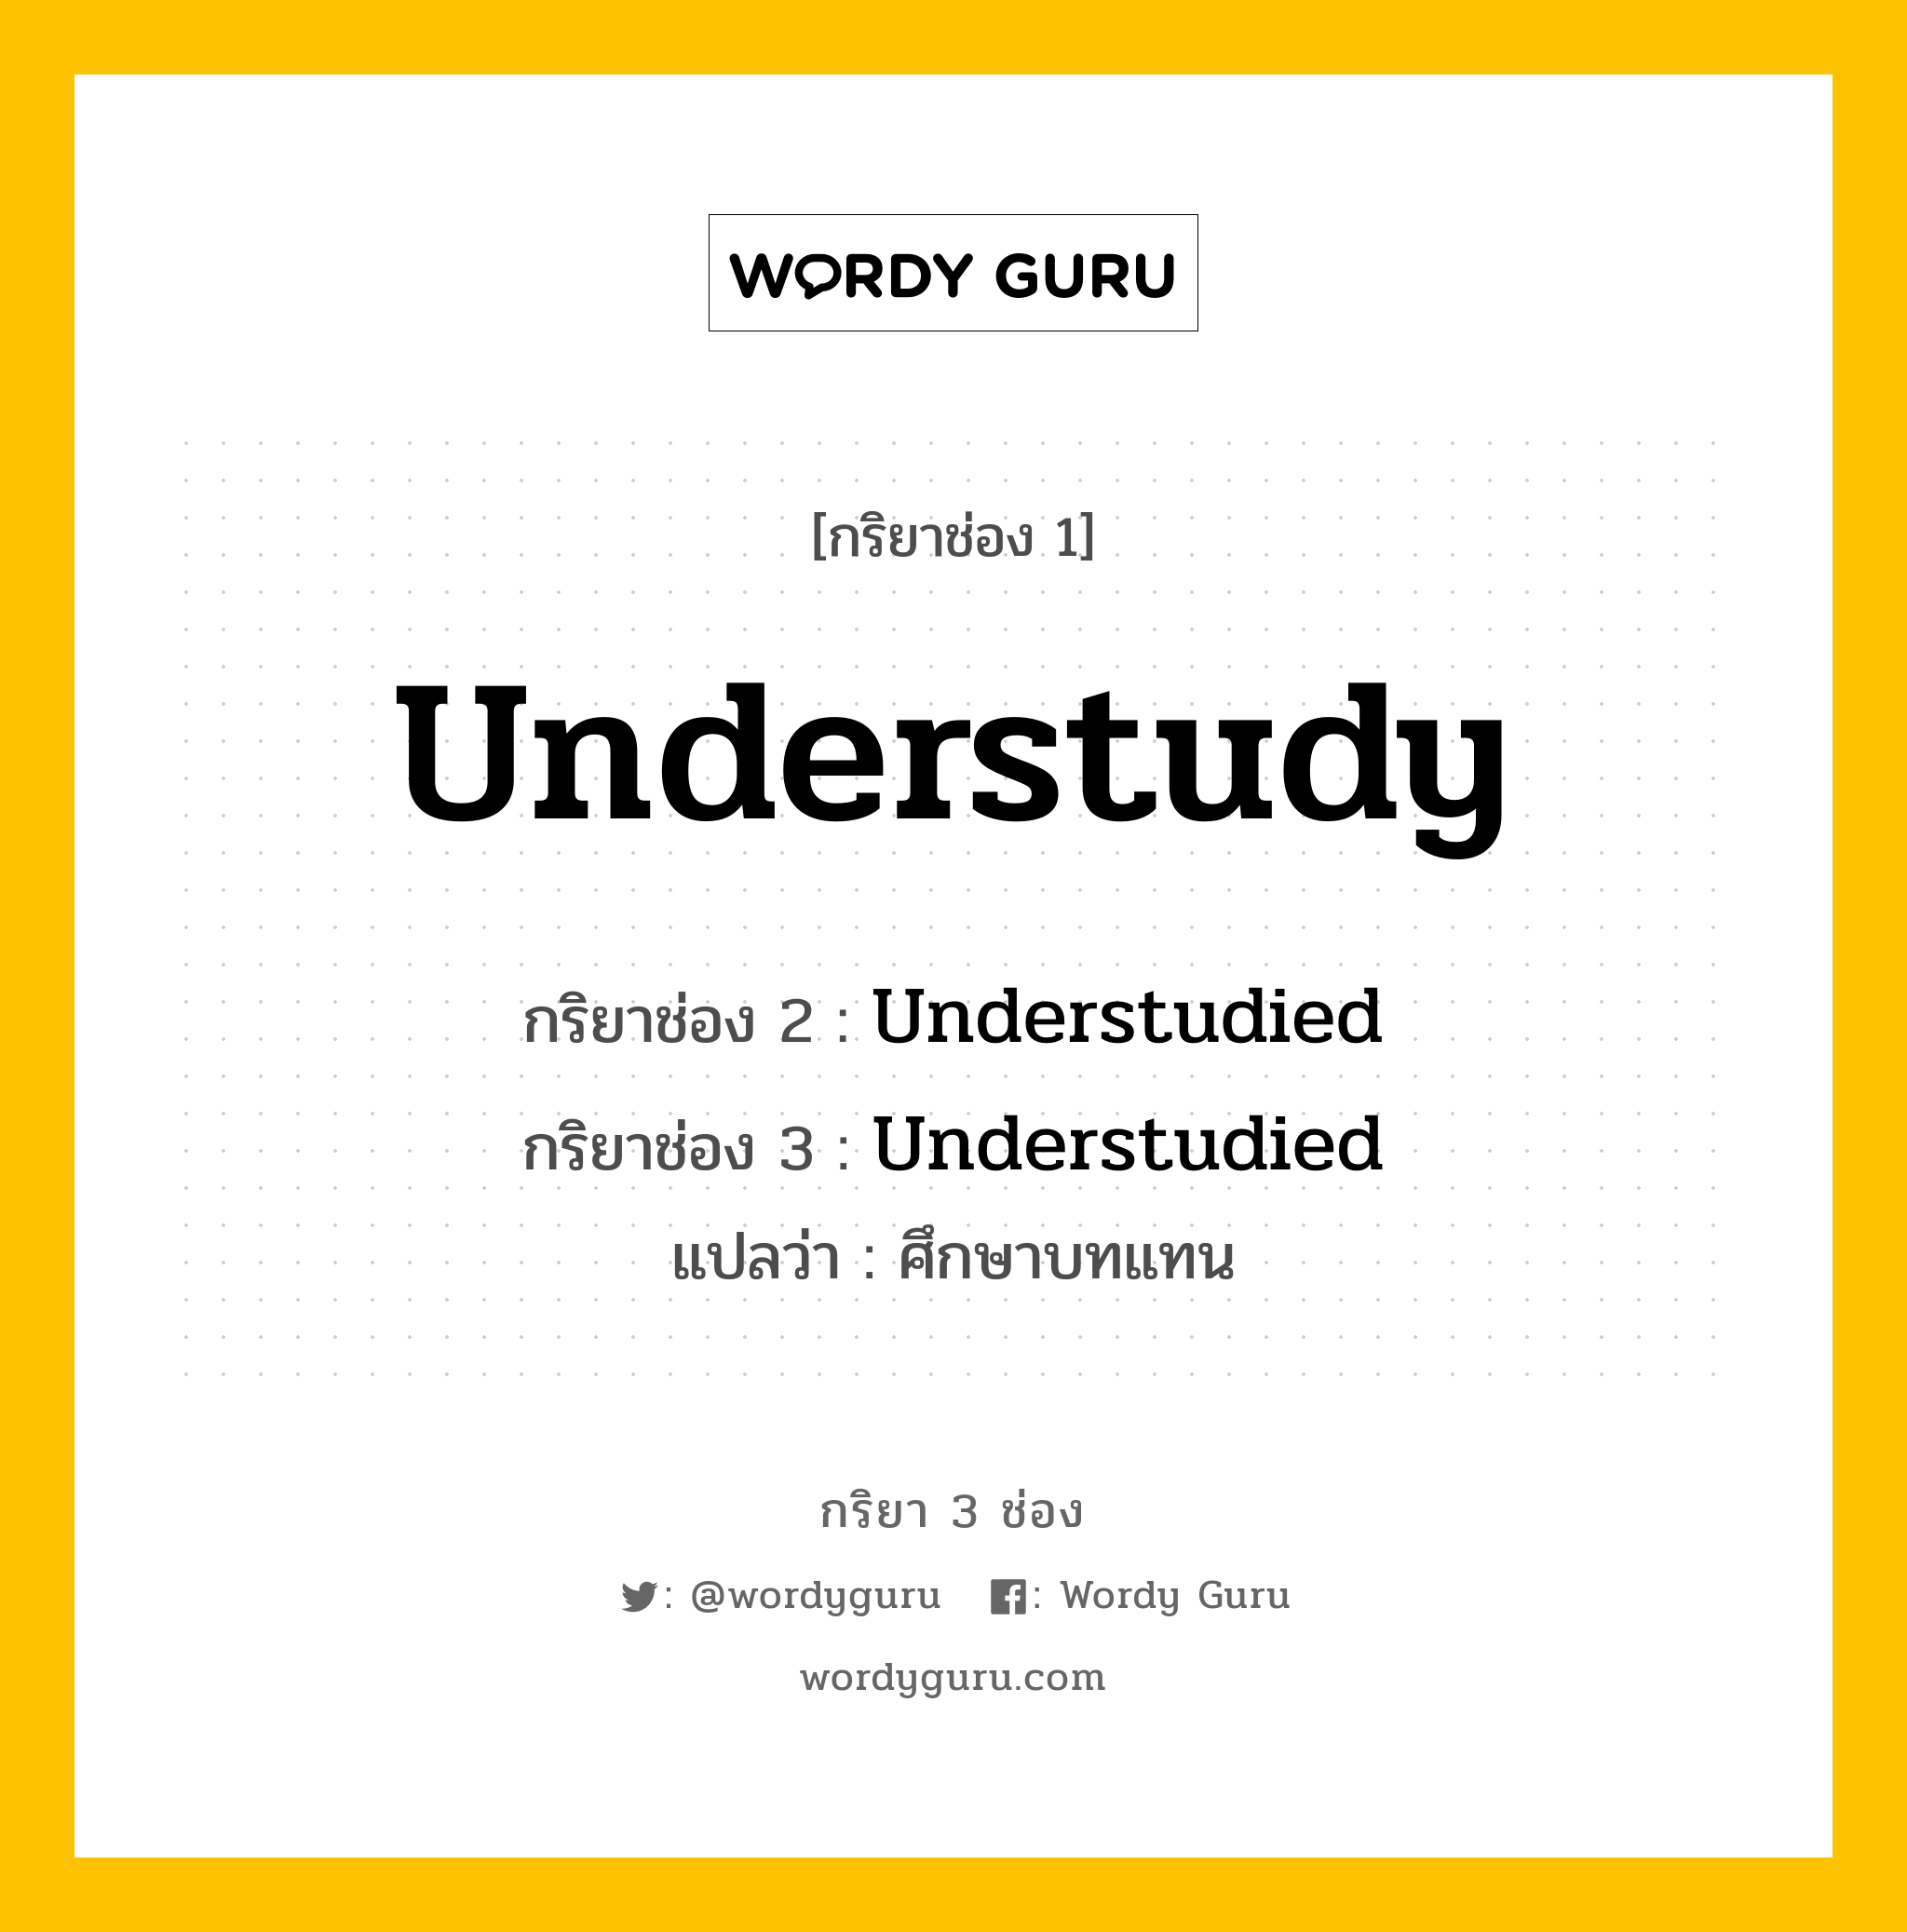 กริยา 3 ช่อง ของ Understudy คืออะไร?, กริยาช่อง 1 Understudy กริยาช่อง 2 Understudied กริยาช่อง 3 Understudied แปลว่า ศึกษาบทแทน หมวด Regular Verb หมวด Regular Verb